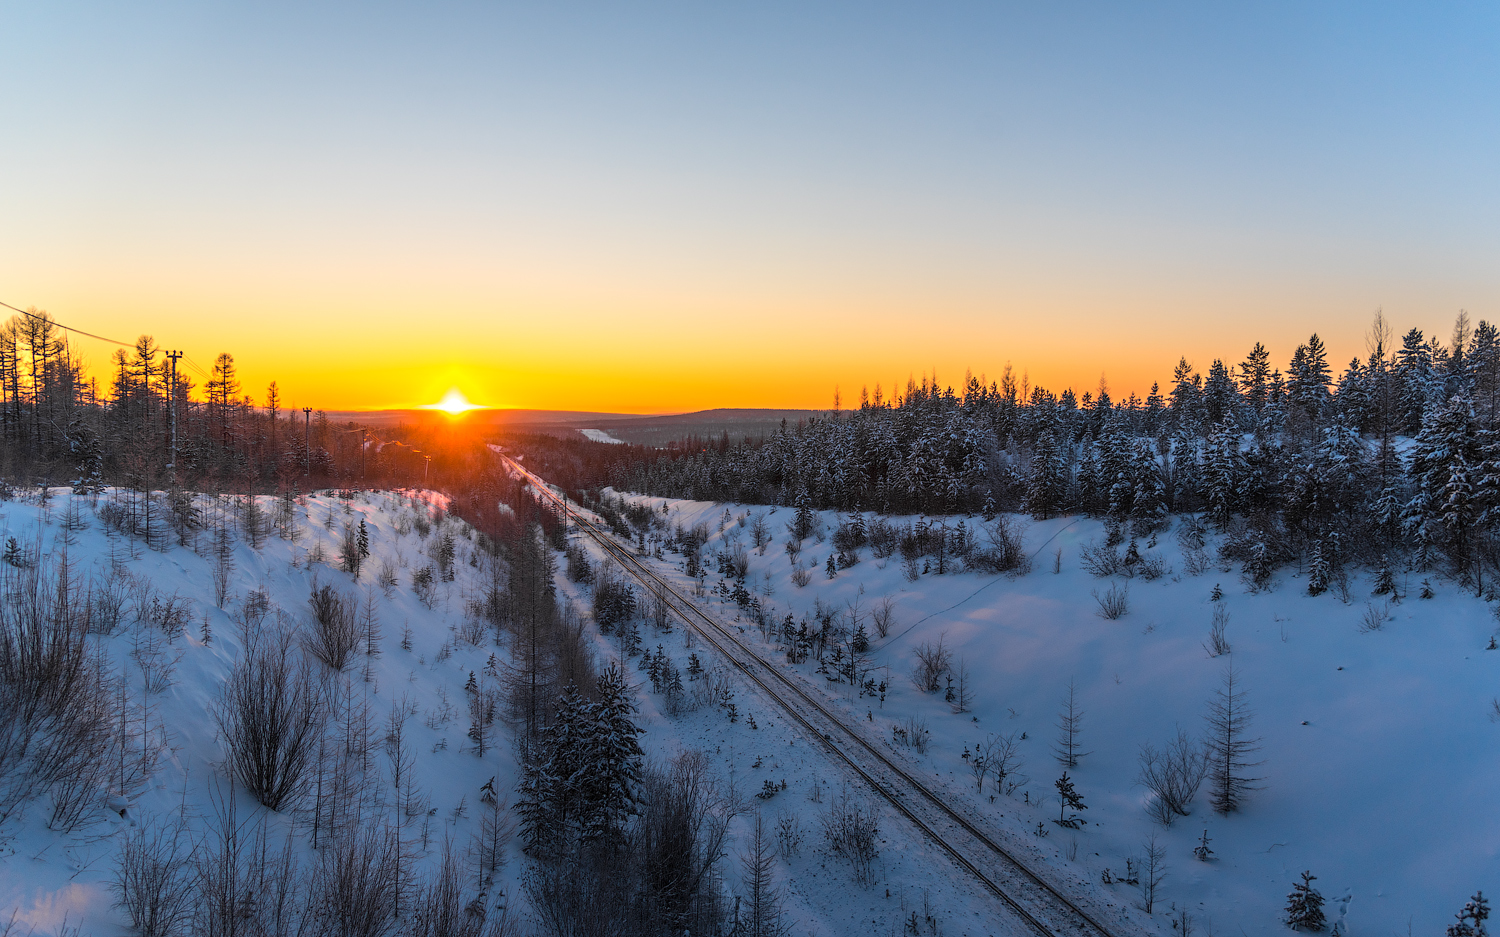 АК "Железные дороги Якутии" — Станции и перегоны